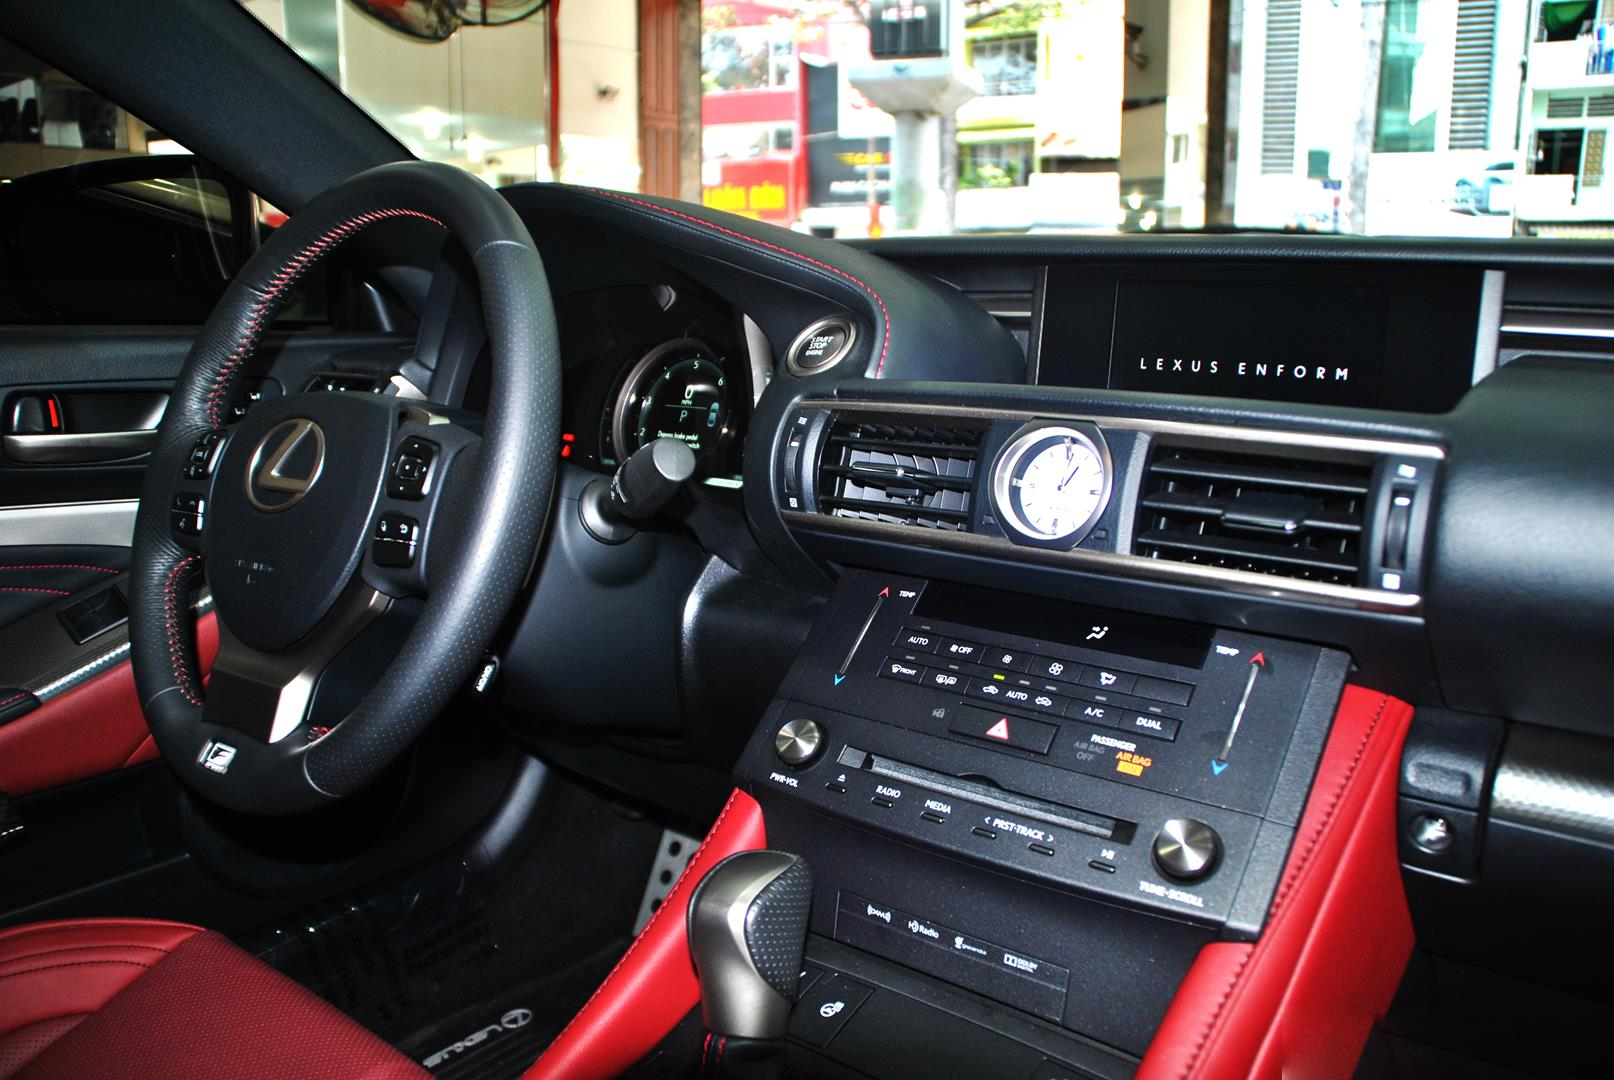 Xe chơi hàng độc Lexus RC 350 F-Sport bán lại giá 2,8 tỷ đồng, tình trạng sử dụng gây ngạc nhiên - Ảnh 3.